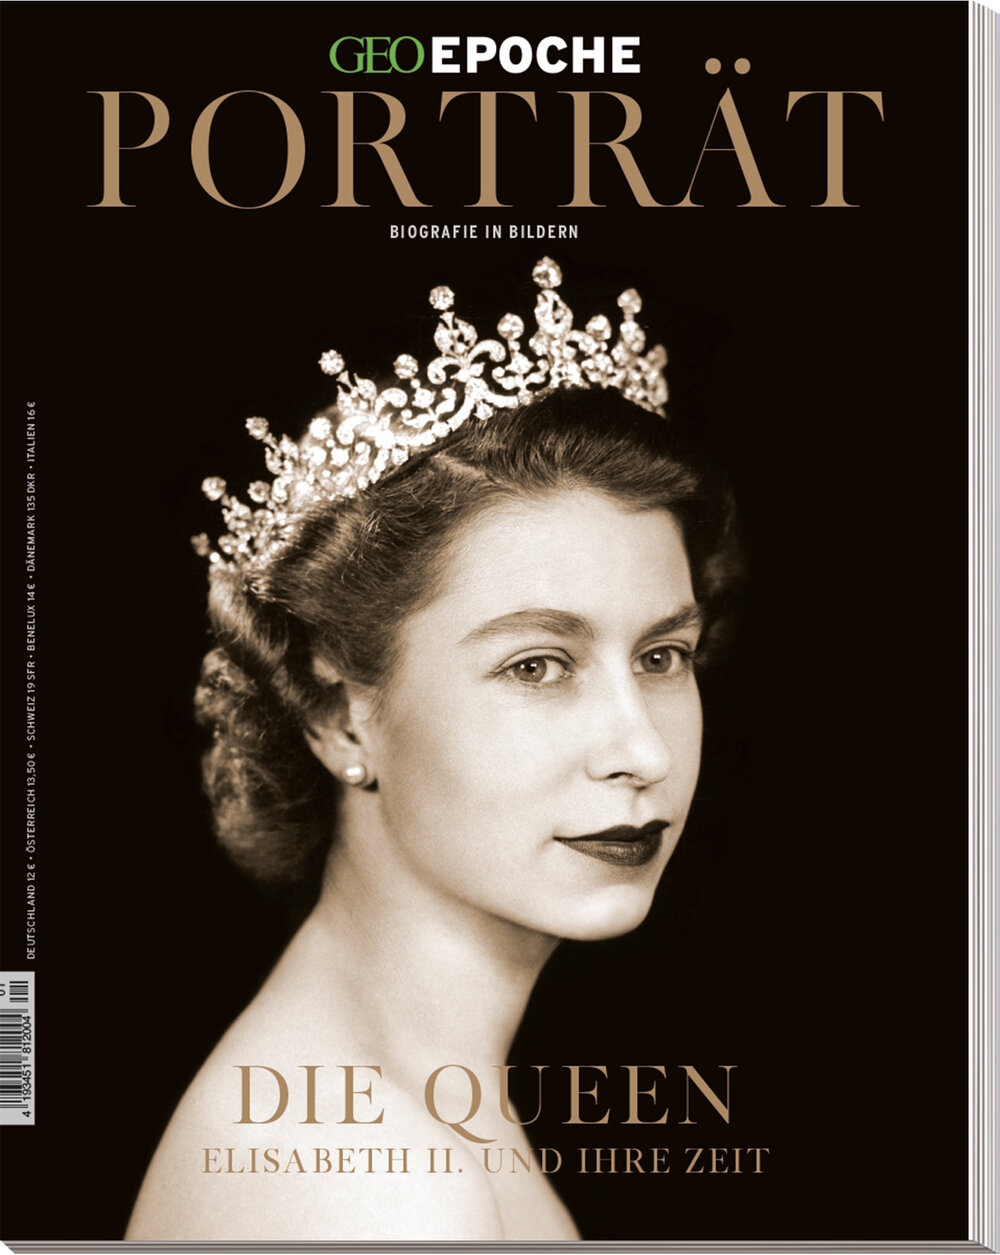 GEO EPOCHE Porträt „Die Queen“